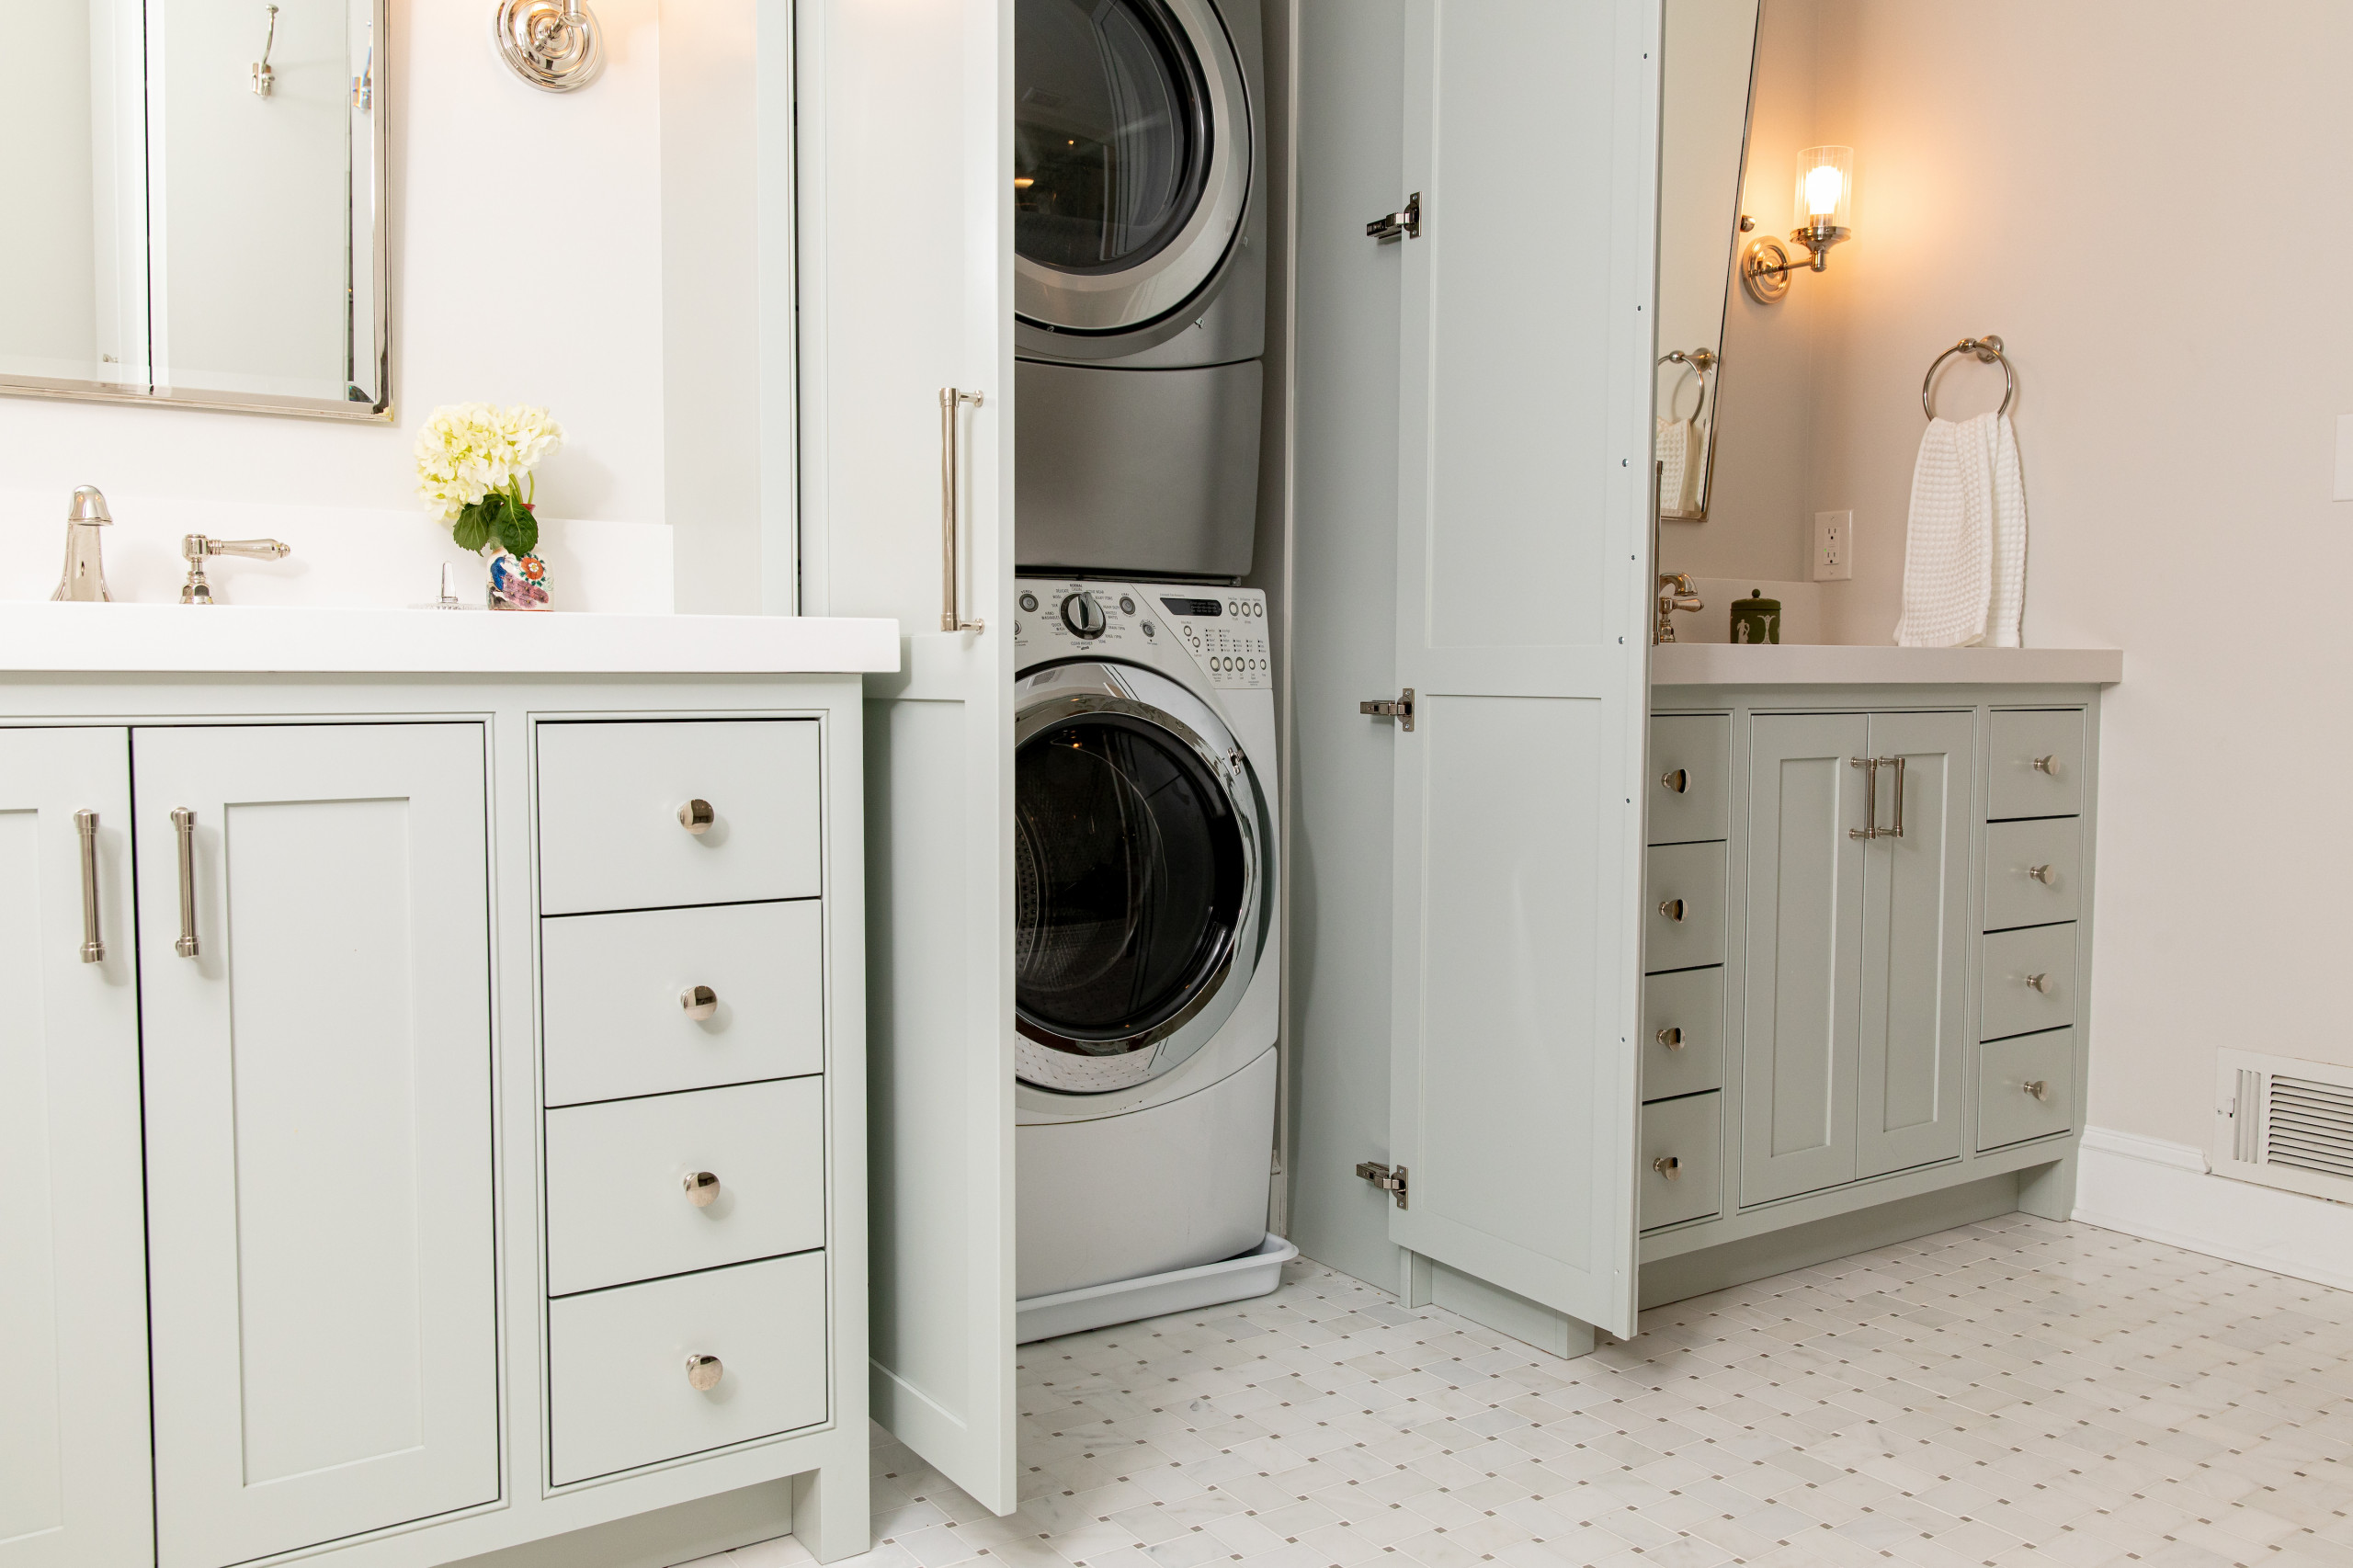 Washer And Dryer Hidden In Cabinet - Photos & Ideas | Houzz